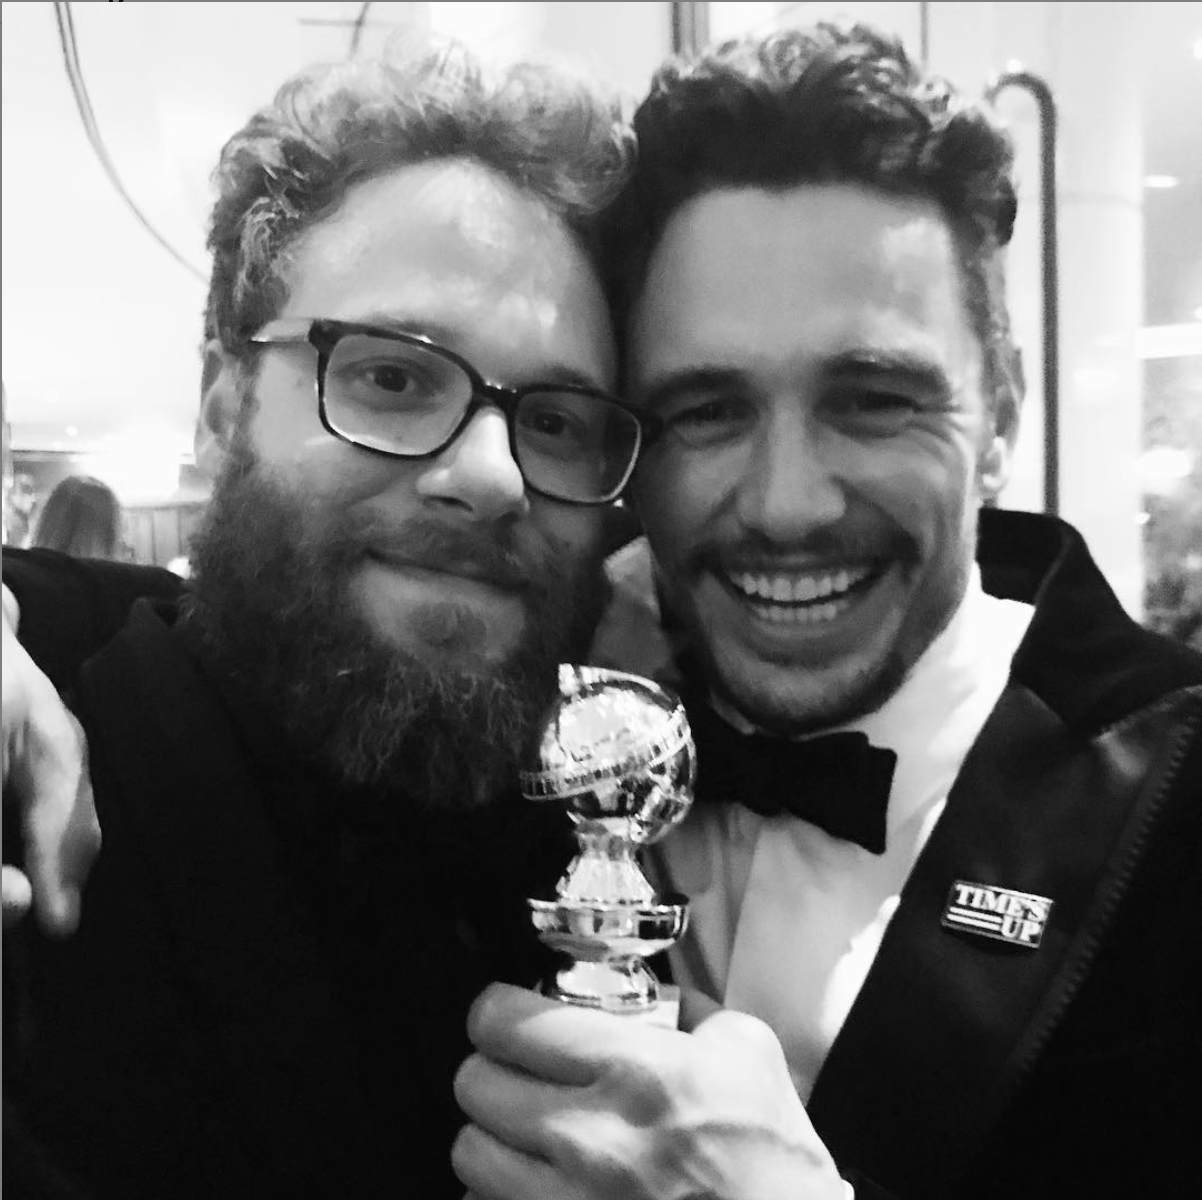 Seth Rogen & James Franco celebrating the Golden Globes